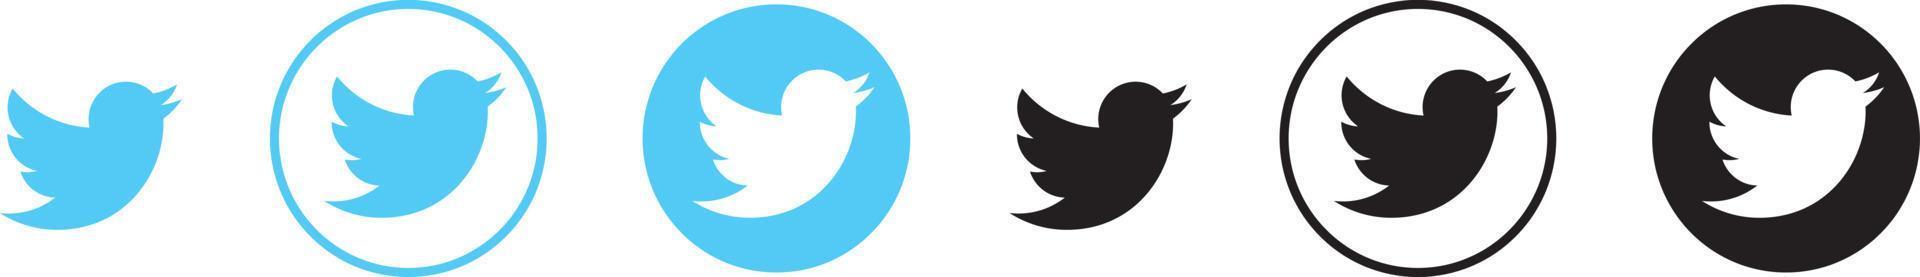 ícone redondo do logotipo do twitter na cor azul claro vetor